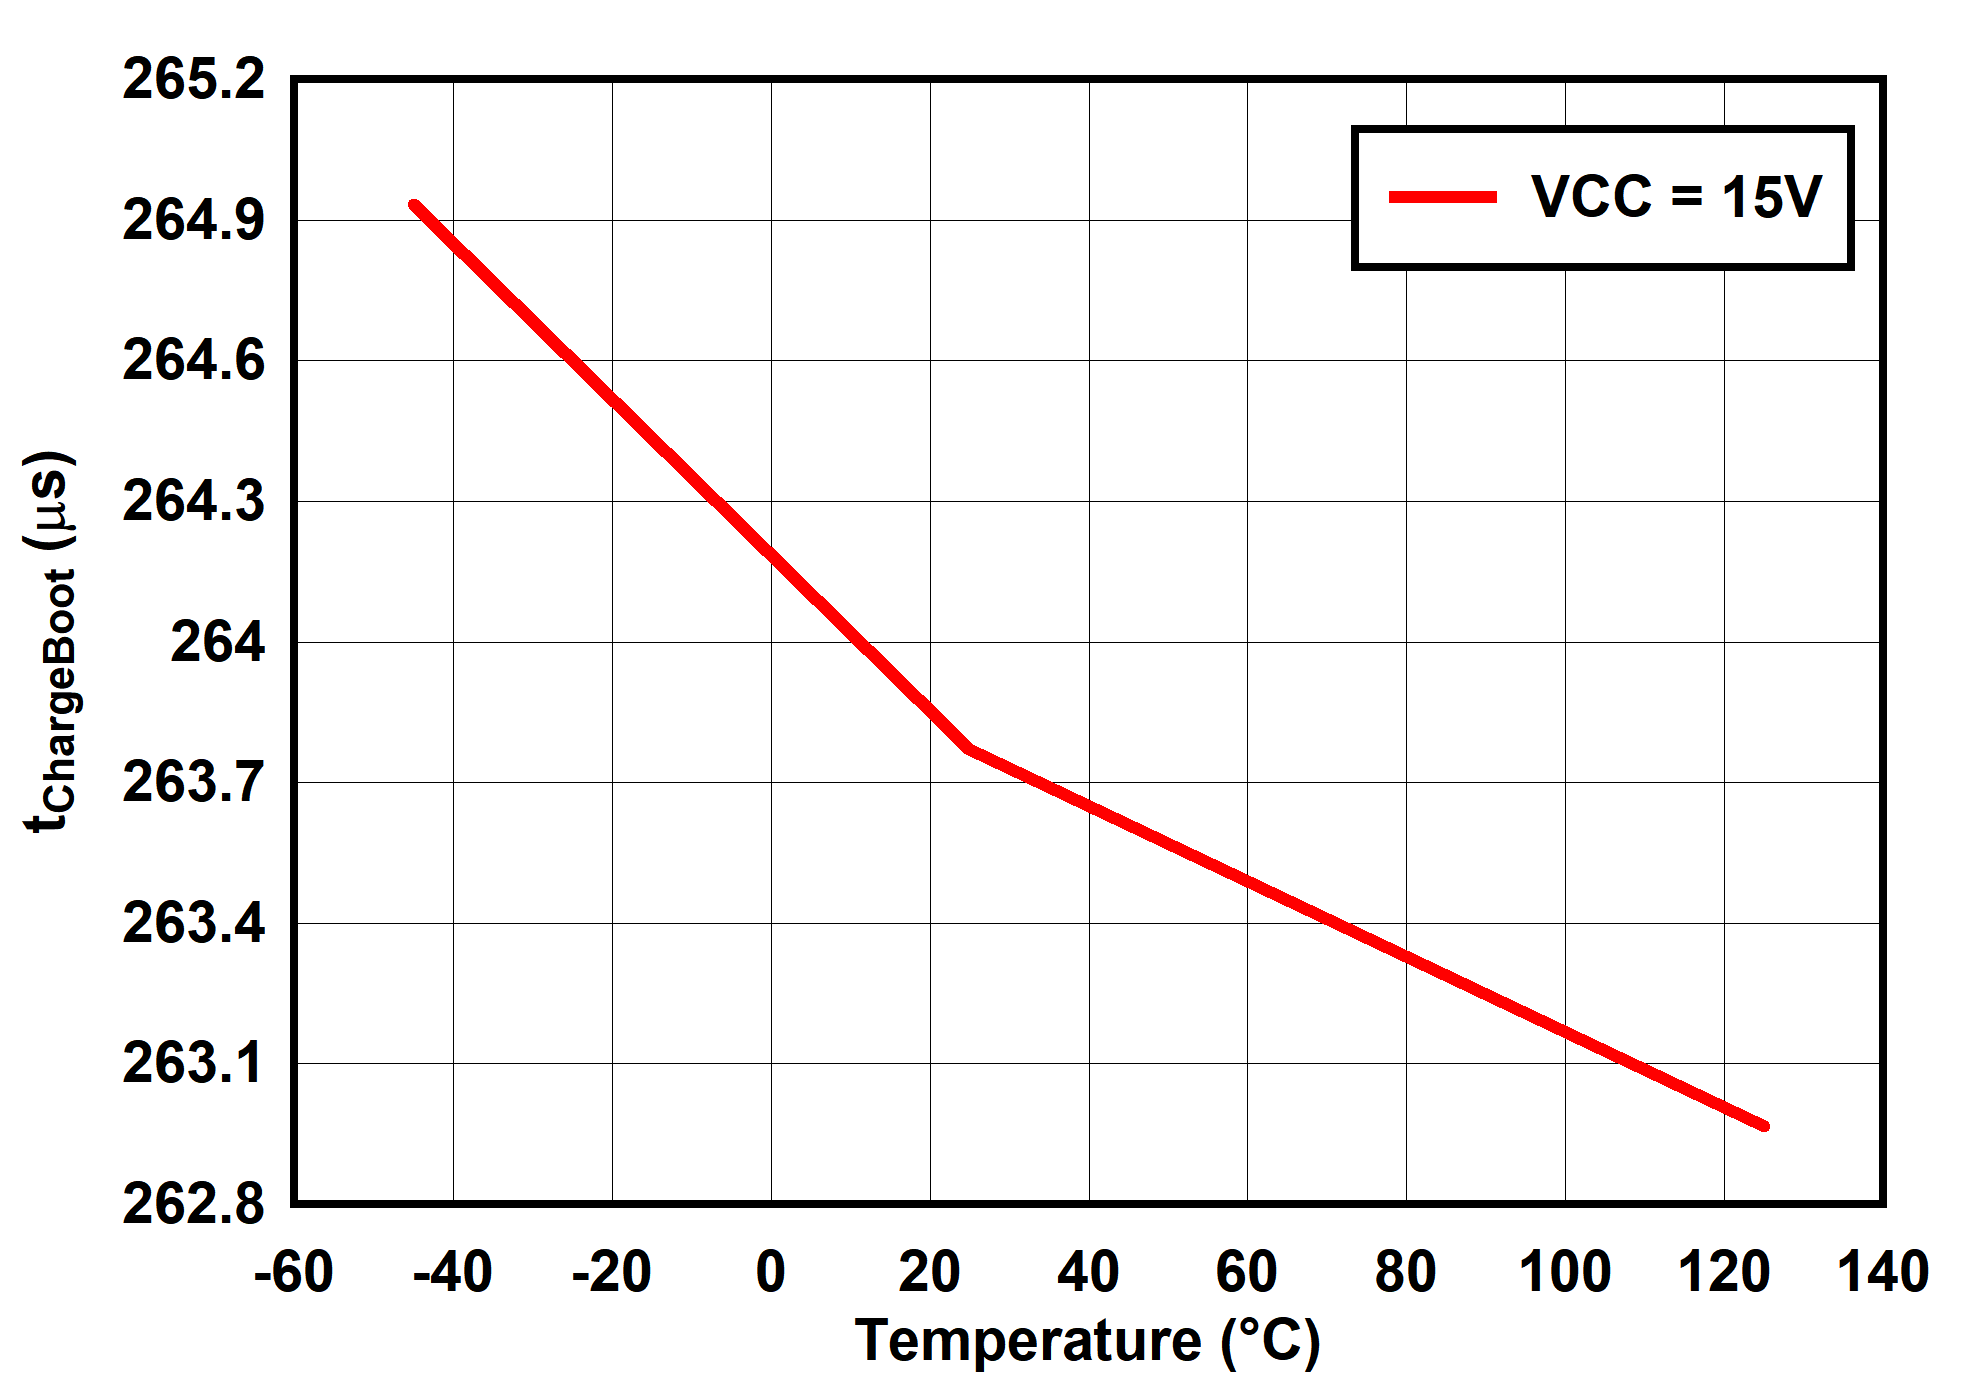 UCC25660 tChargeBoot vs Temperature